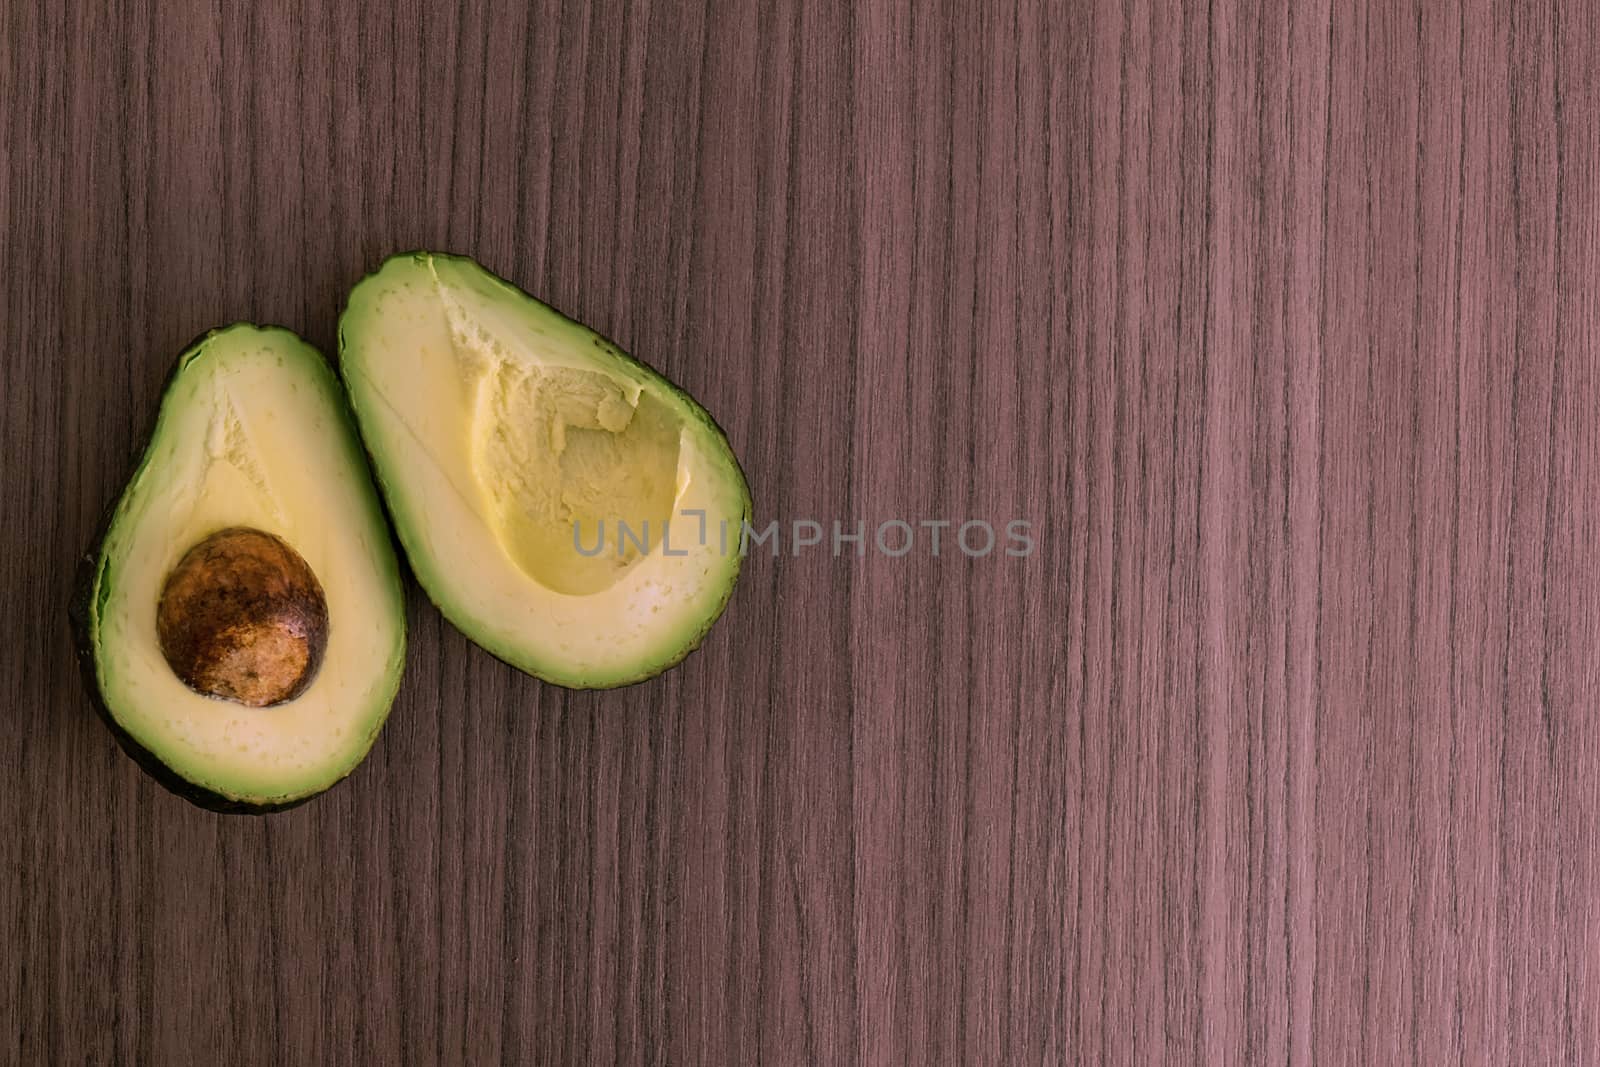 Split avocado by dalomo84